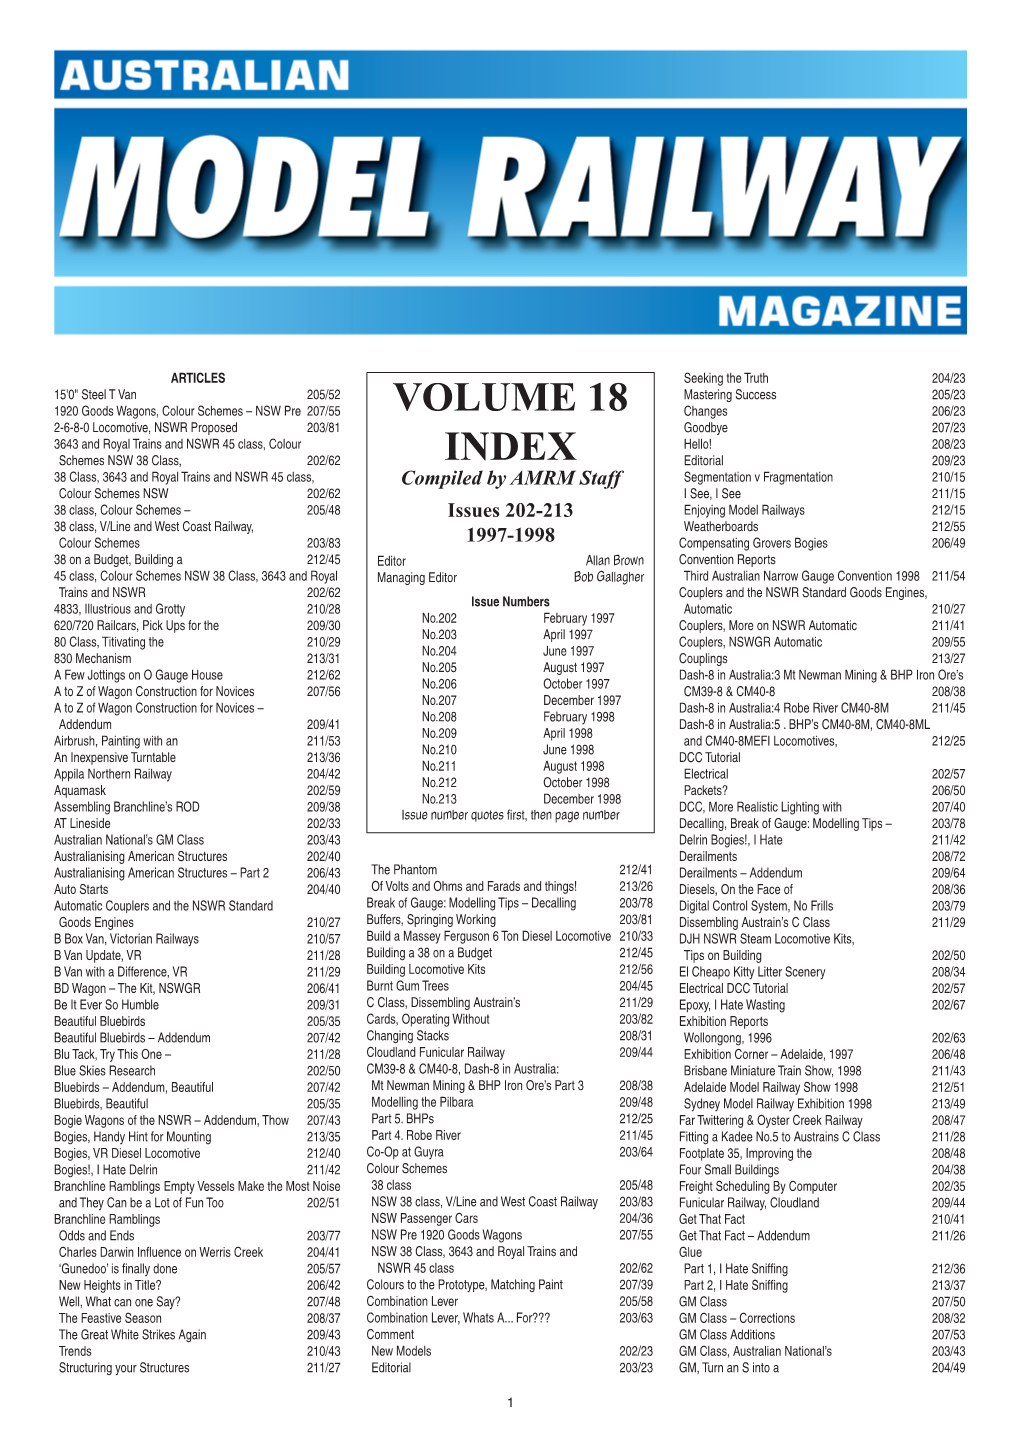 Volume 18 Index